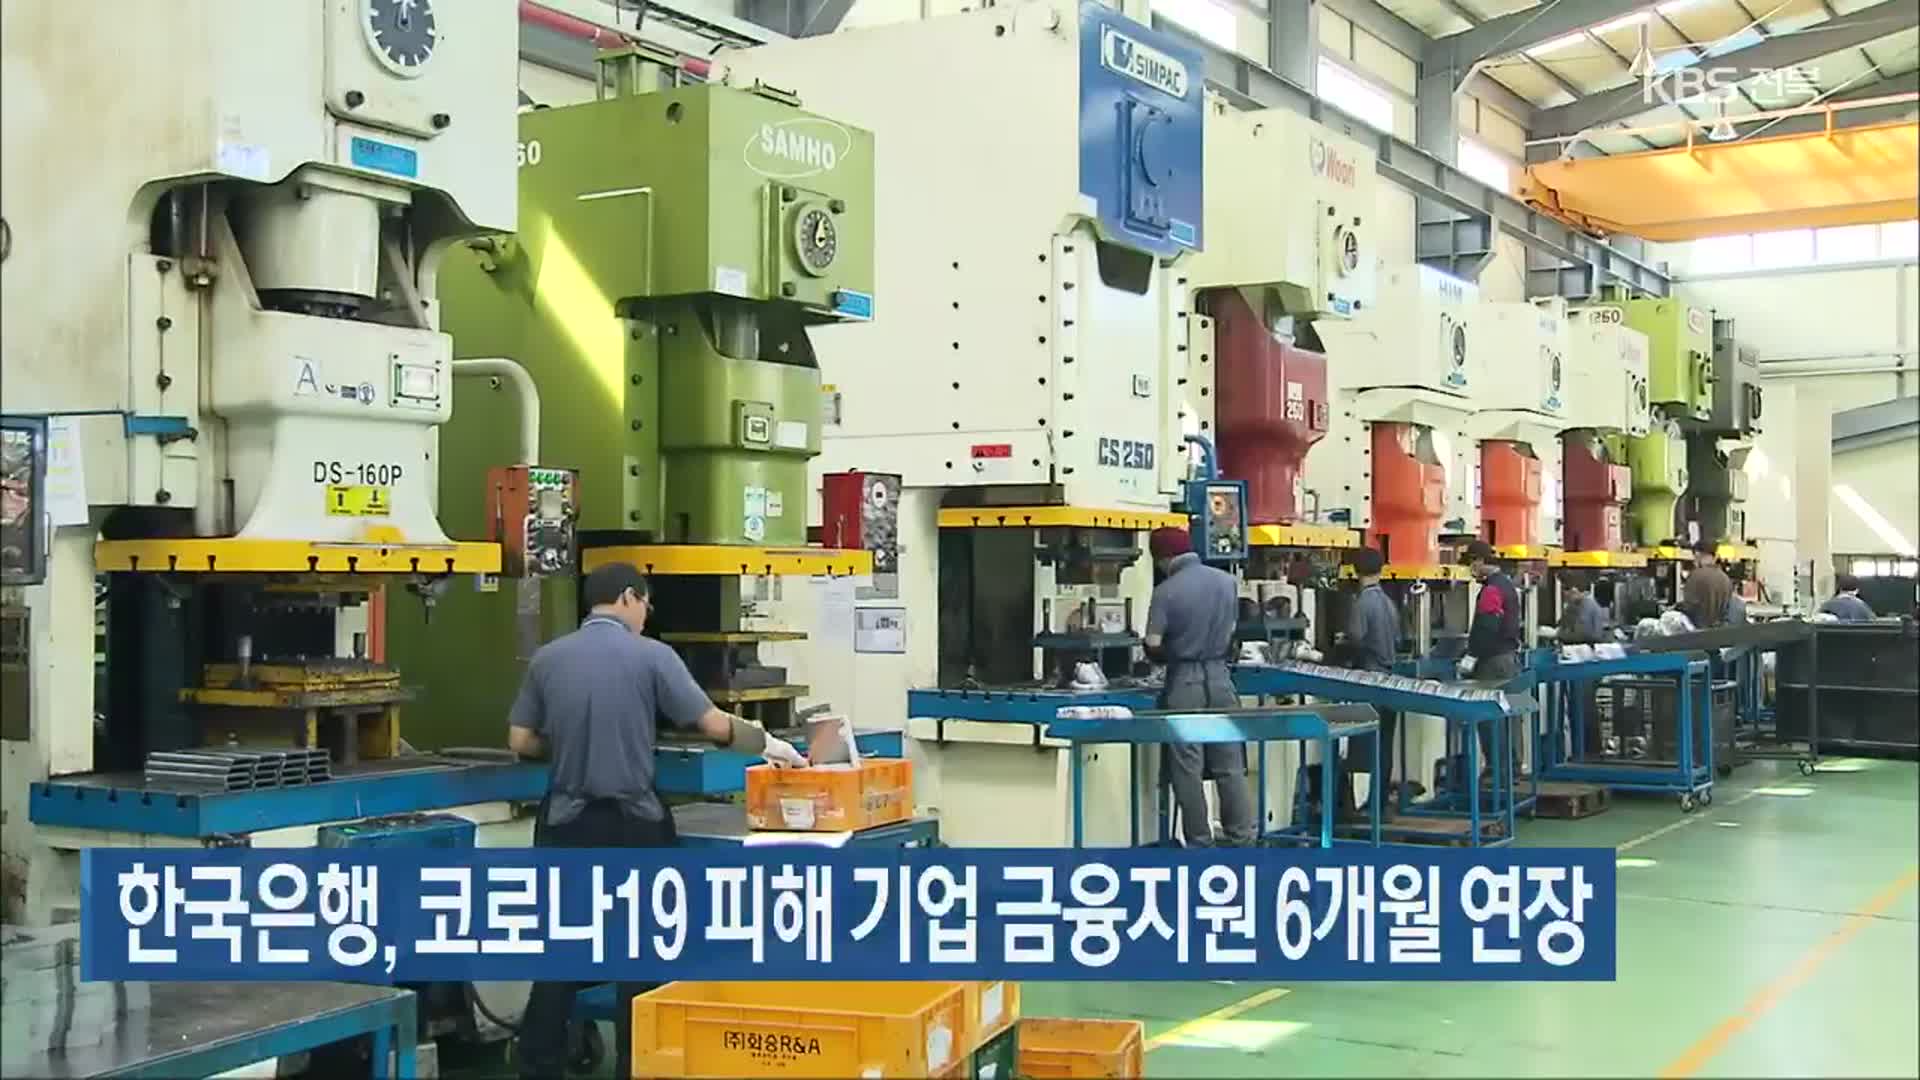 한국은행, 코로나19 피해 기업 금융지원 6개월 연장